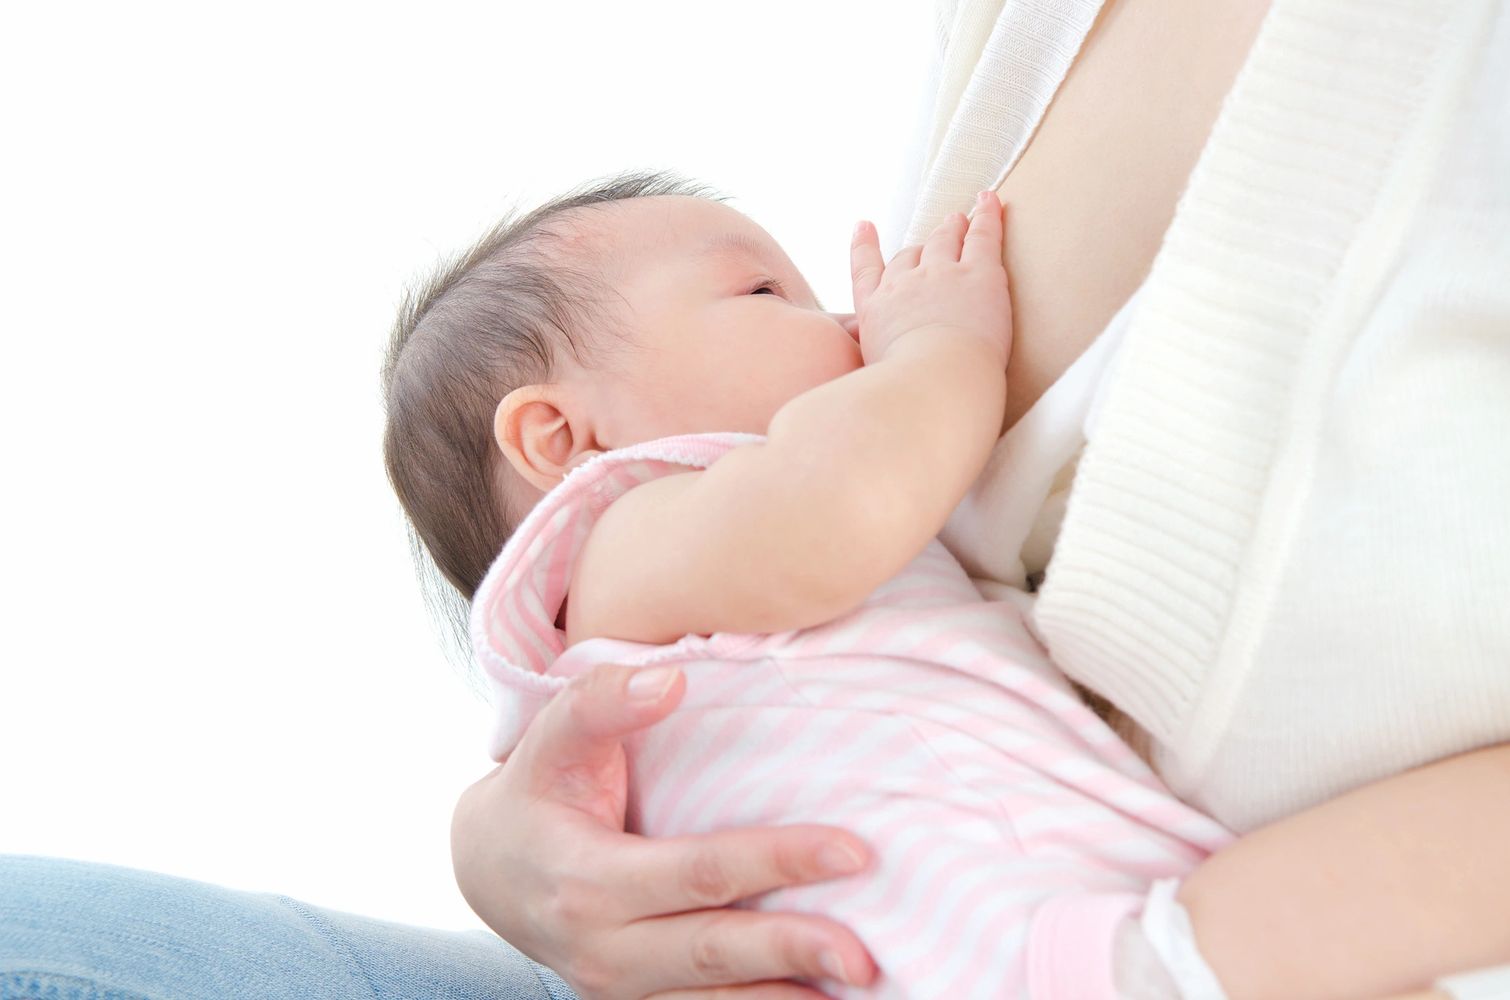 Breastfeeding, chest feeding, lactation, ibclc , pumping, breast milk, pregnancy, birth, 